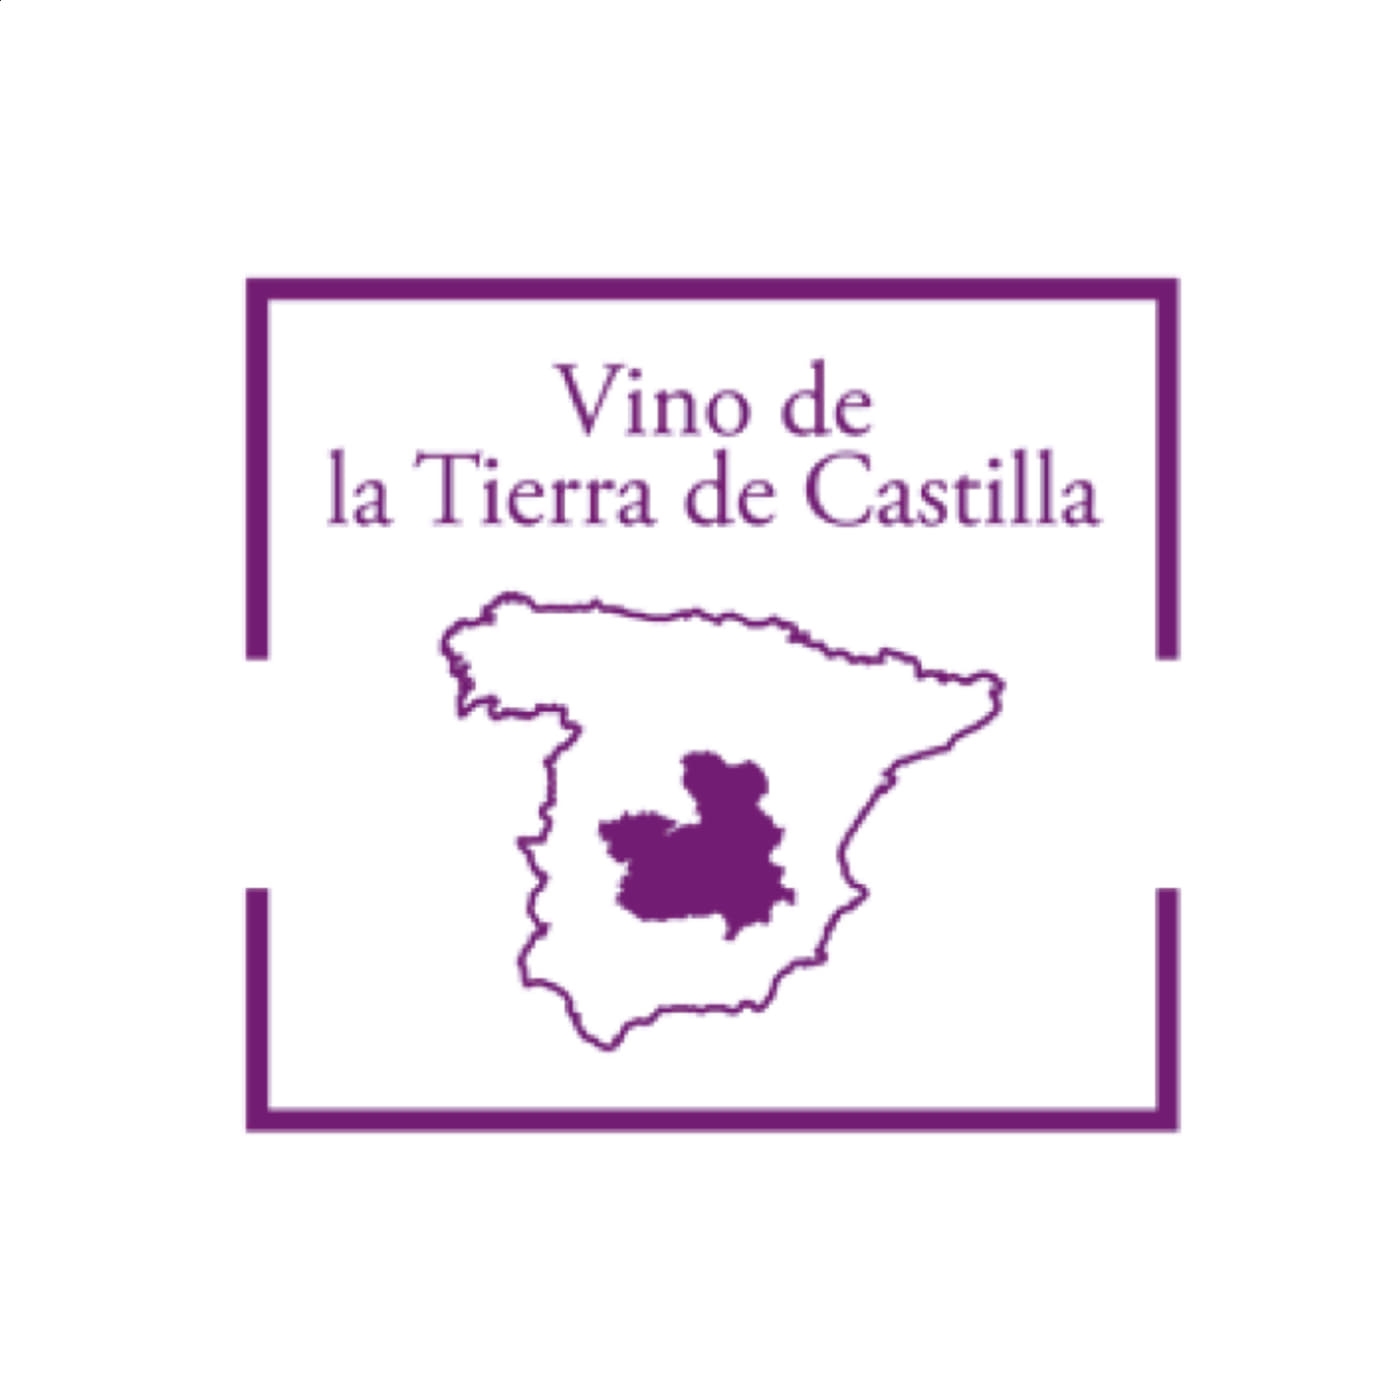 Bodegas San Isidro de Pedro Muñoz - Carril de Cotos Tempranillo Envejecido IGP Vino de la Tierra de Castilla 75cl, 6uds